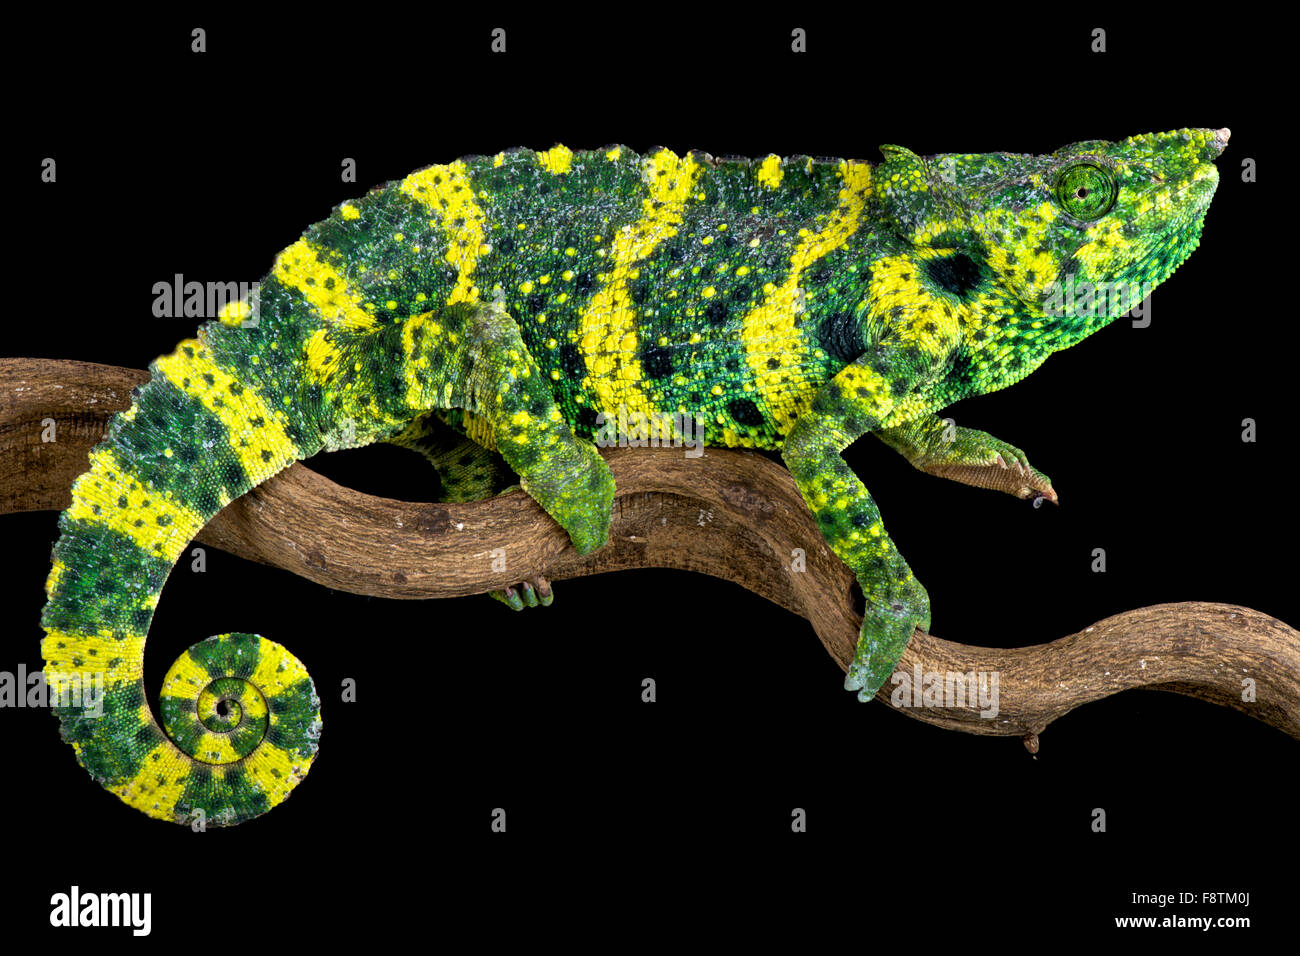 Meller's chameleon (Trioceros melleri) Stock Photo